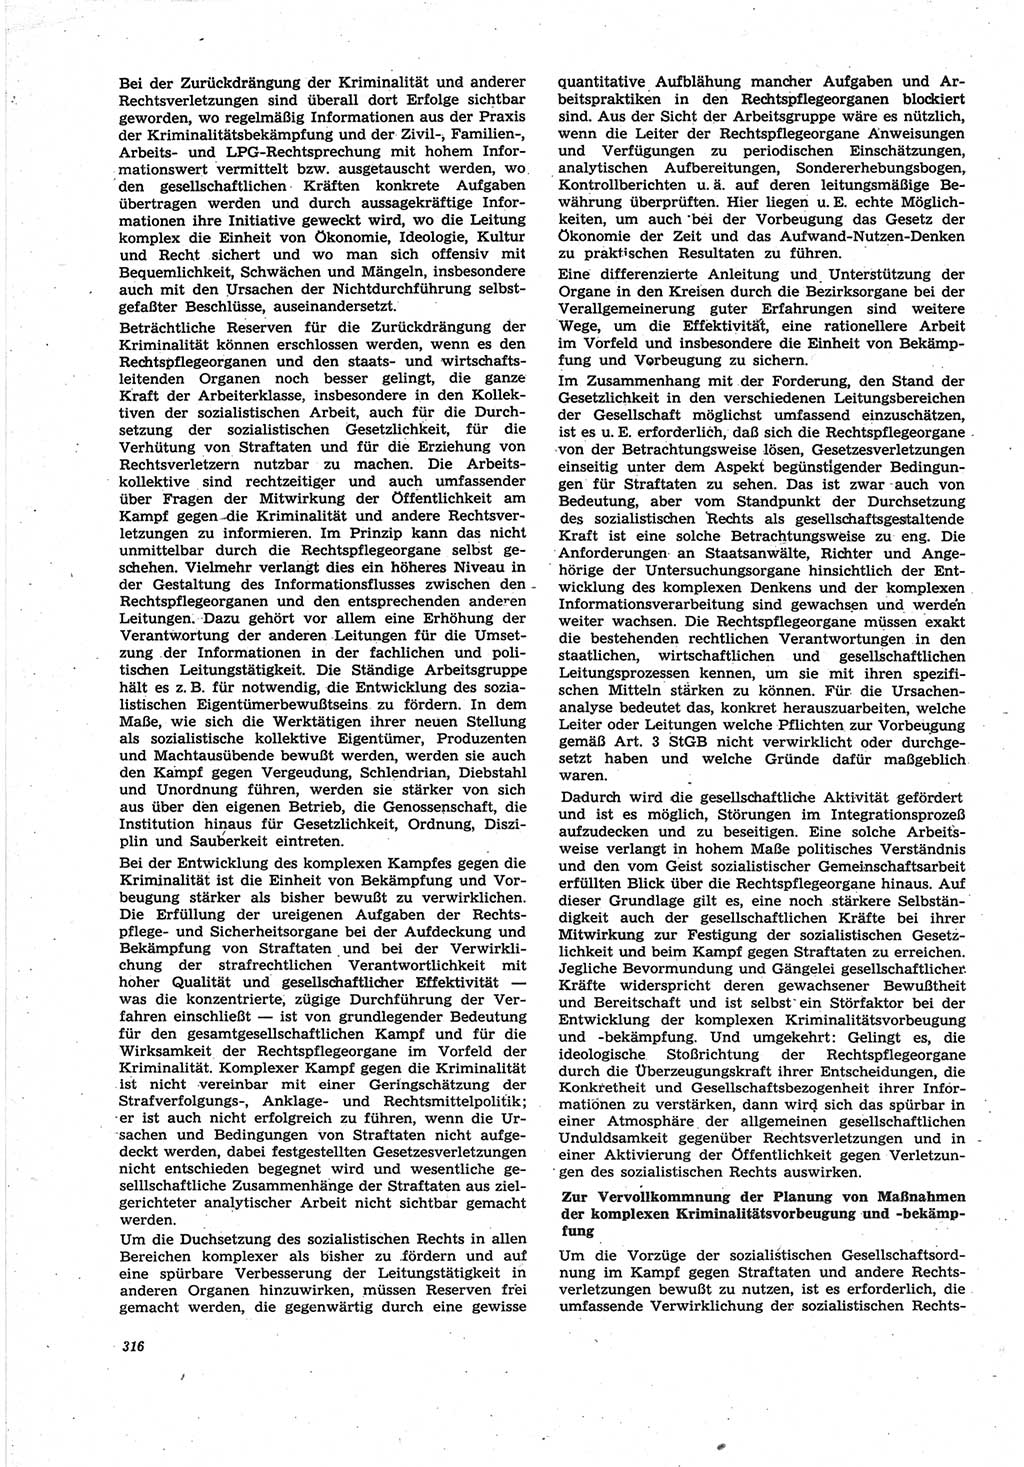 Neue Justiz (NJ), Zeitschrift für Recht und Rechtswissenschaft [Deutsche Demokratische Republik (DDR)], 25. Jahrgang 1971, Seite 316 (NJ DDR 1971, S. 316)